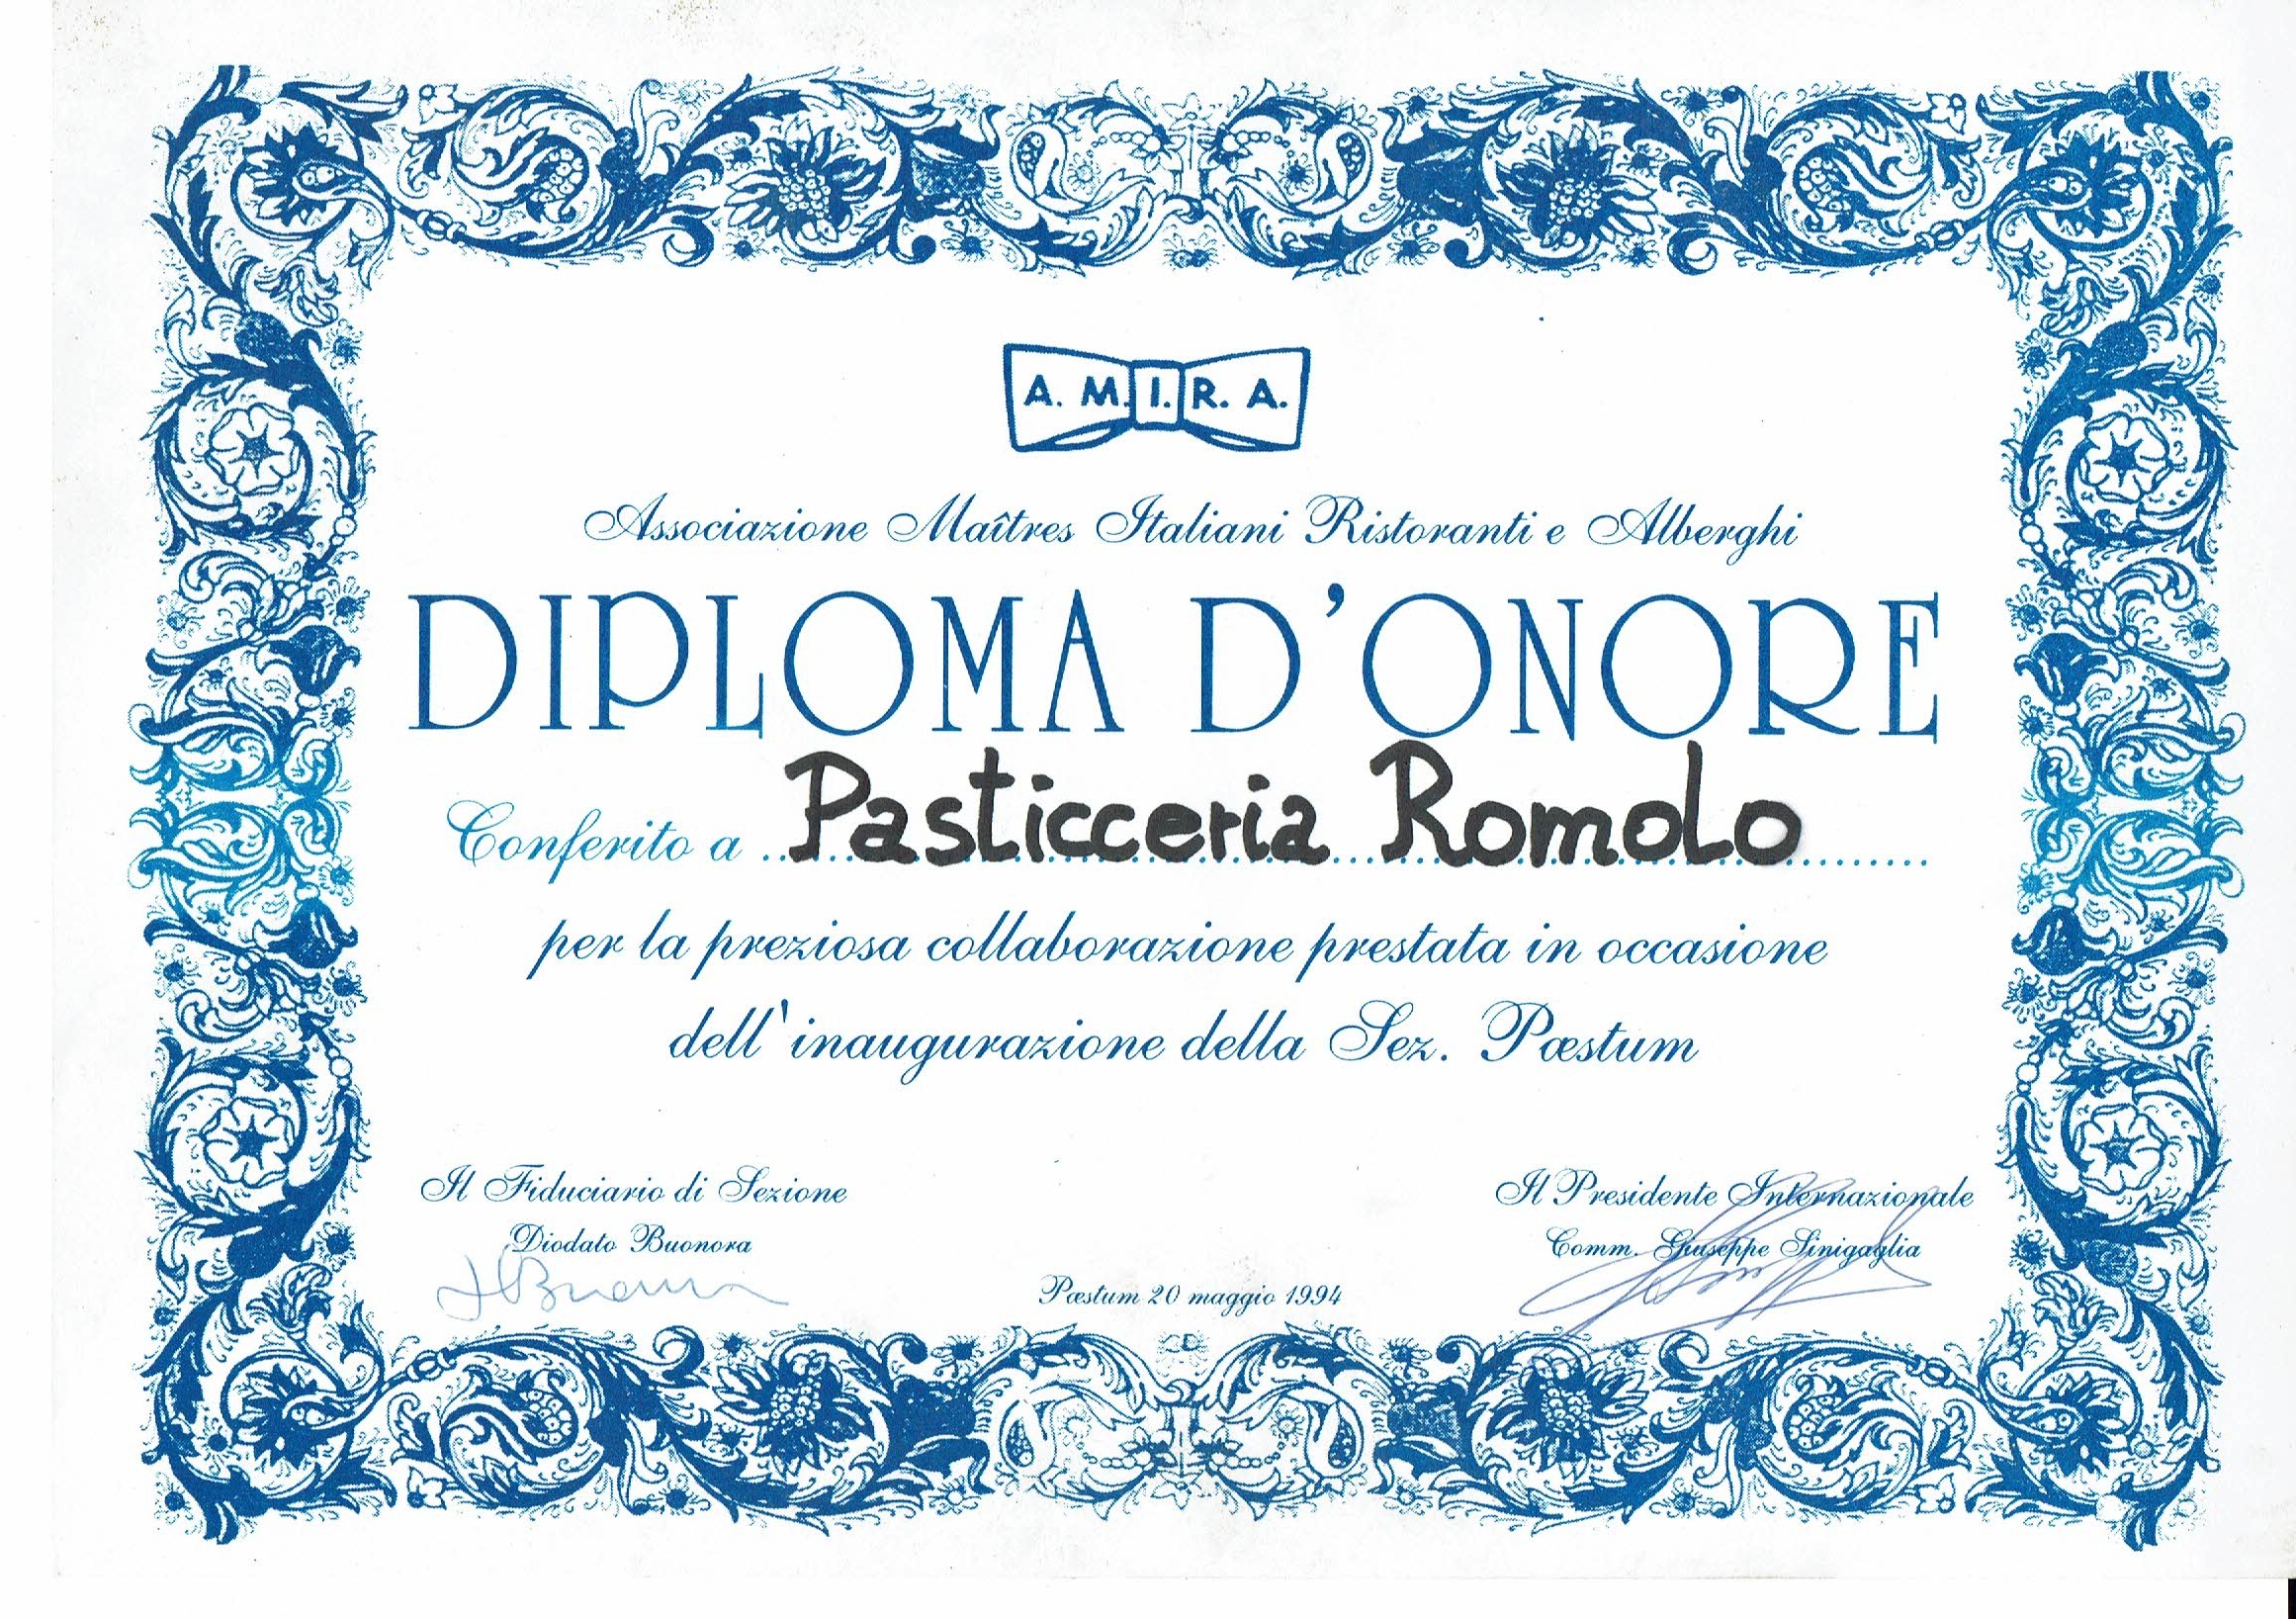 diploma-donore-pasticceria-romolo